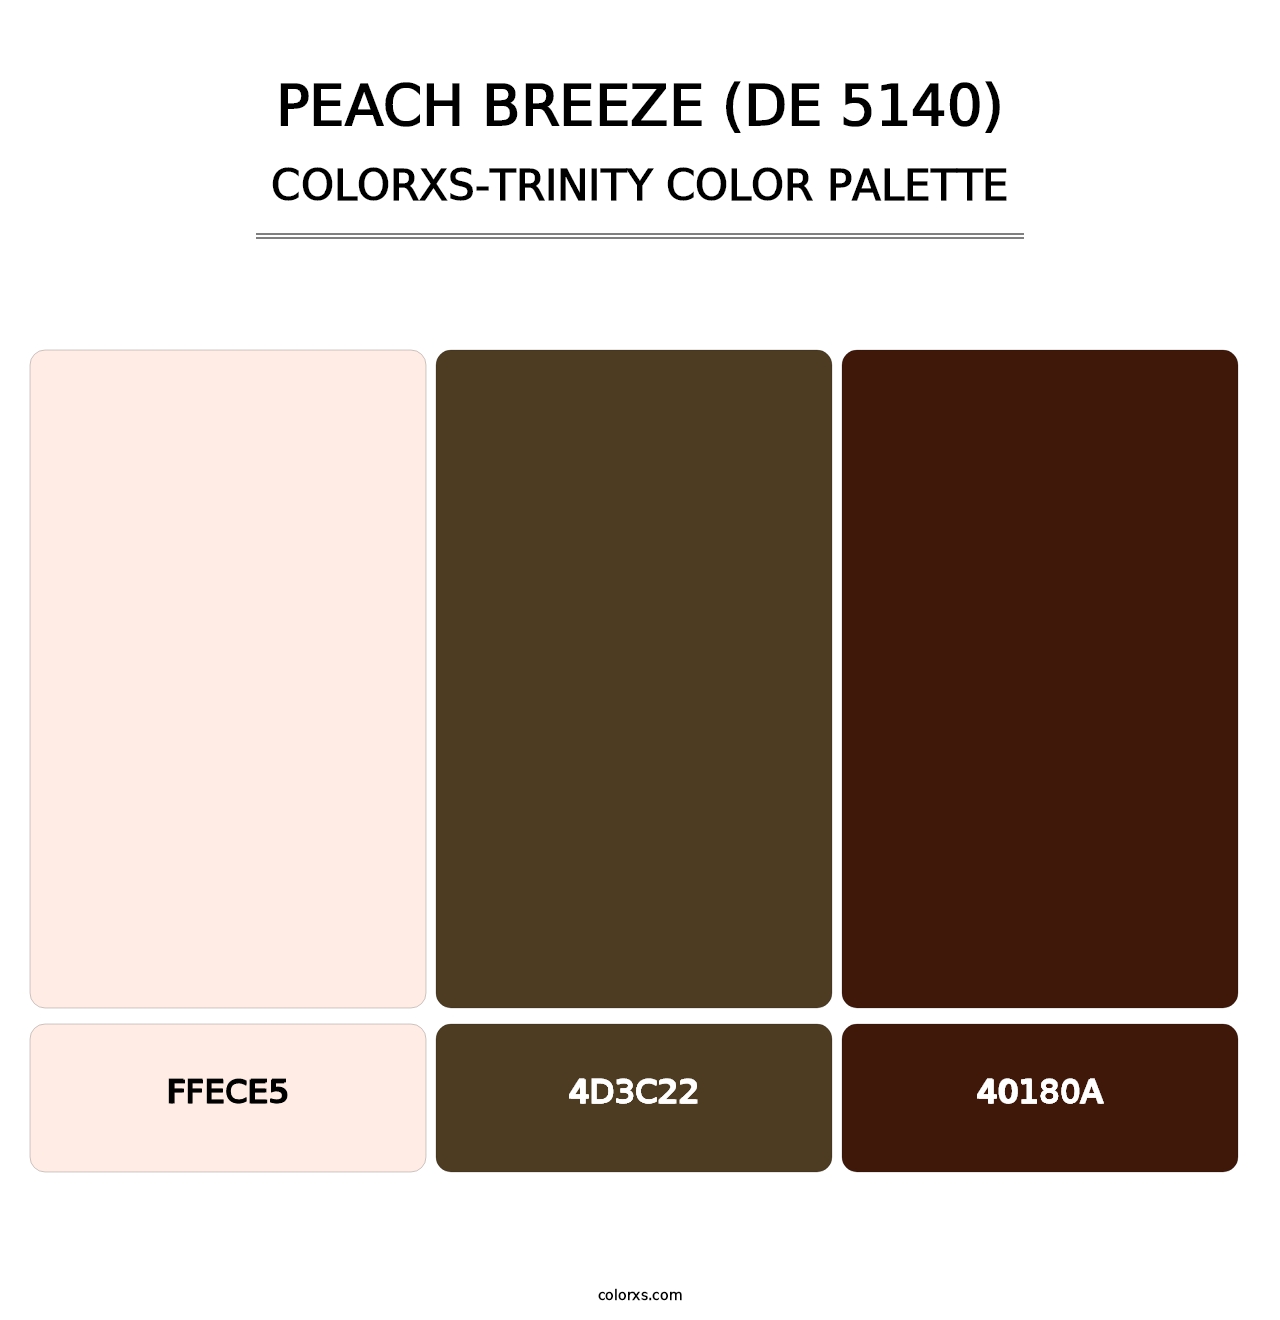 Peach Breeze (DE 5140) - Colorxs Trinity Palette